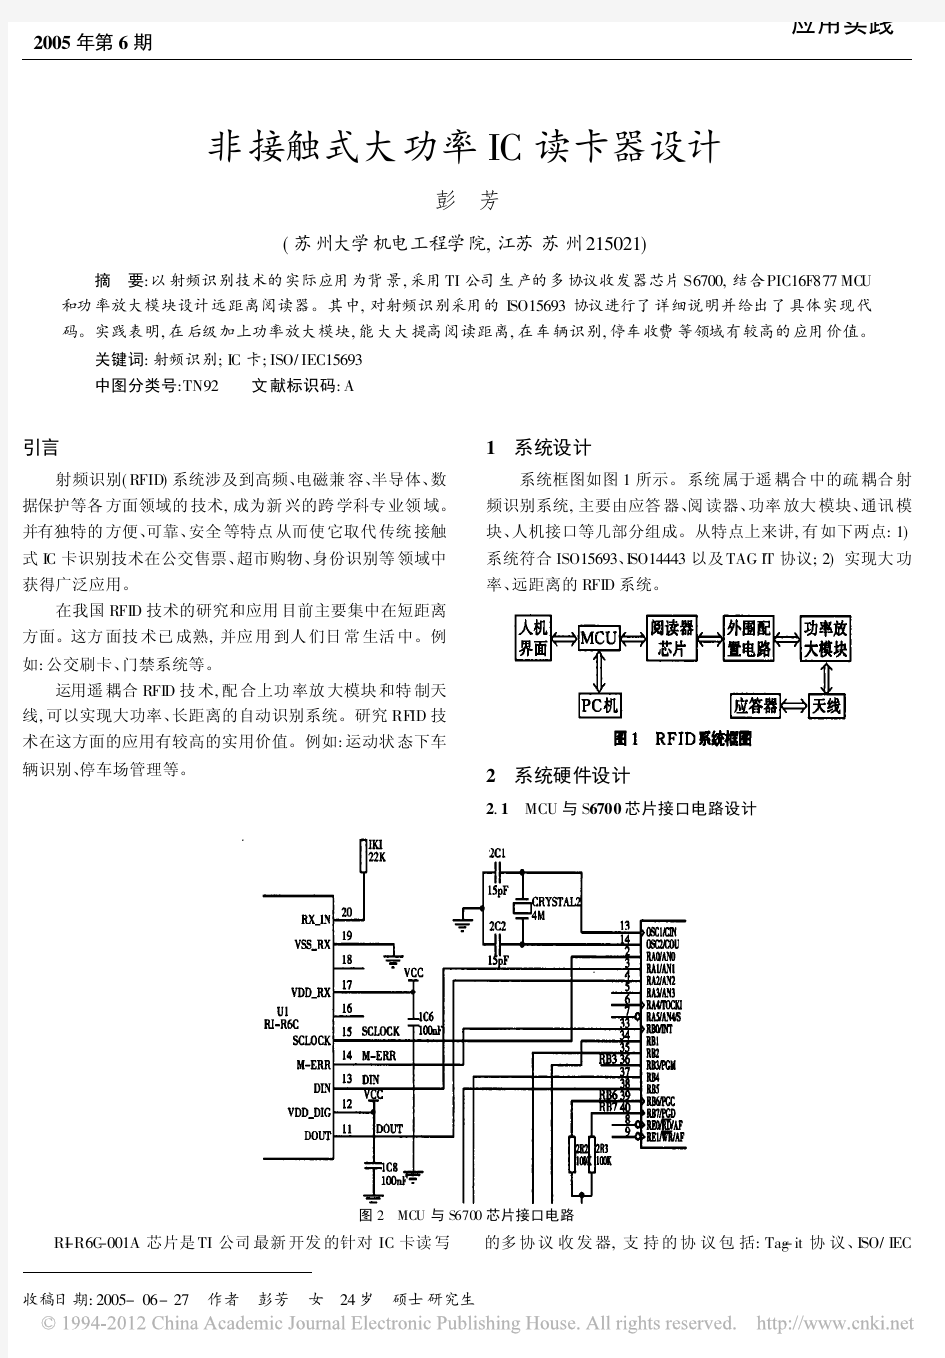 非接触式大功率IC读卡器设计